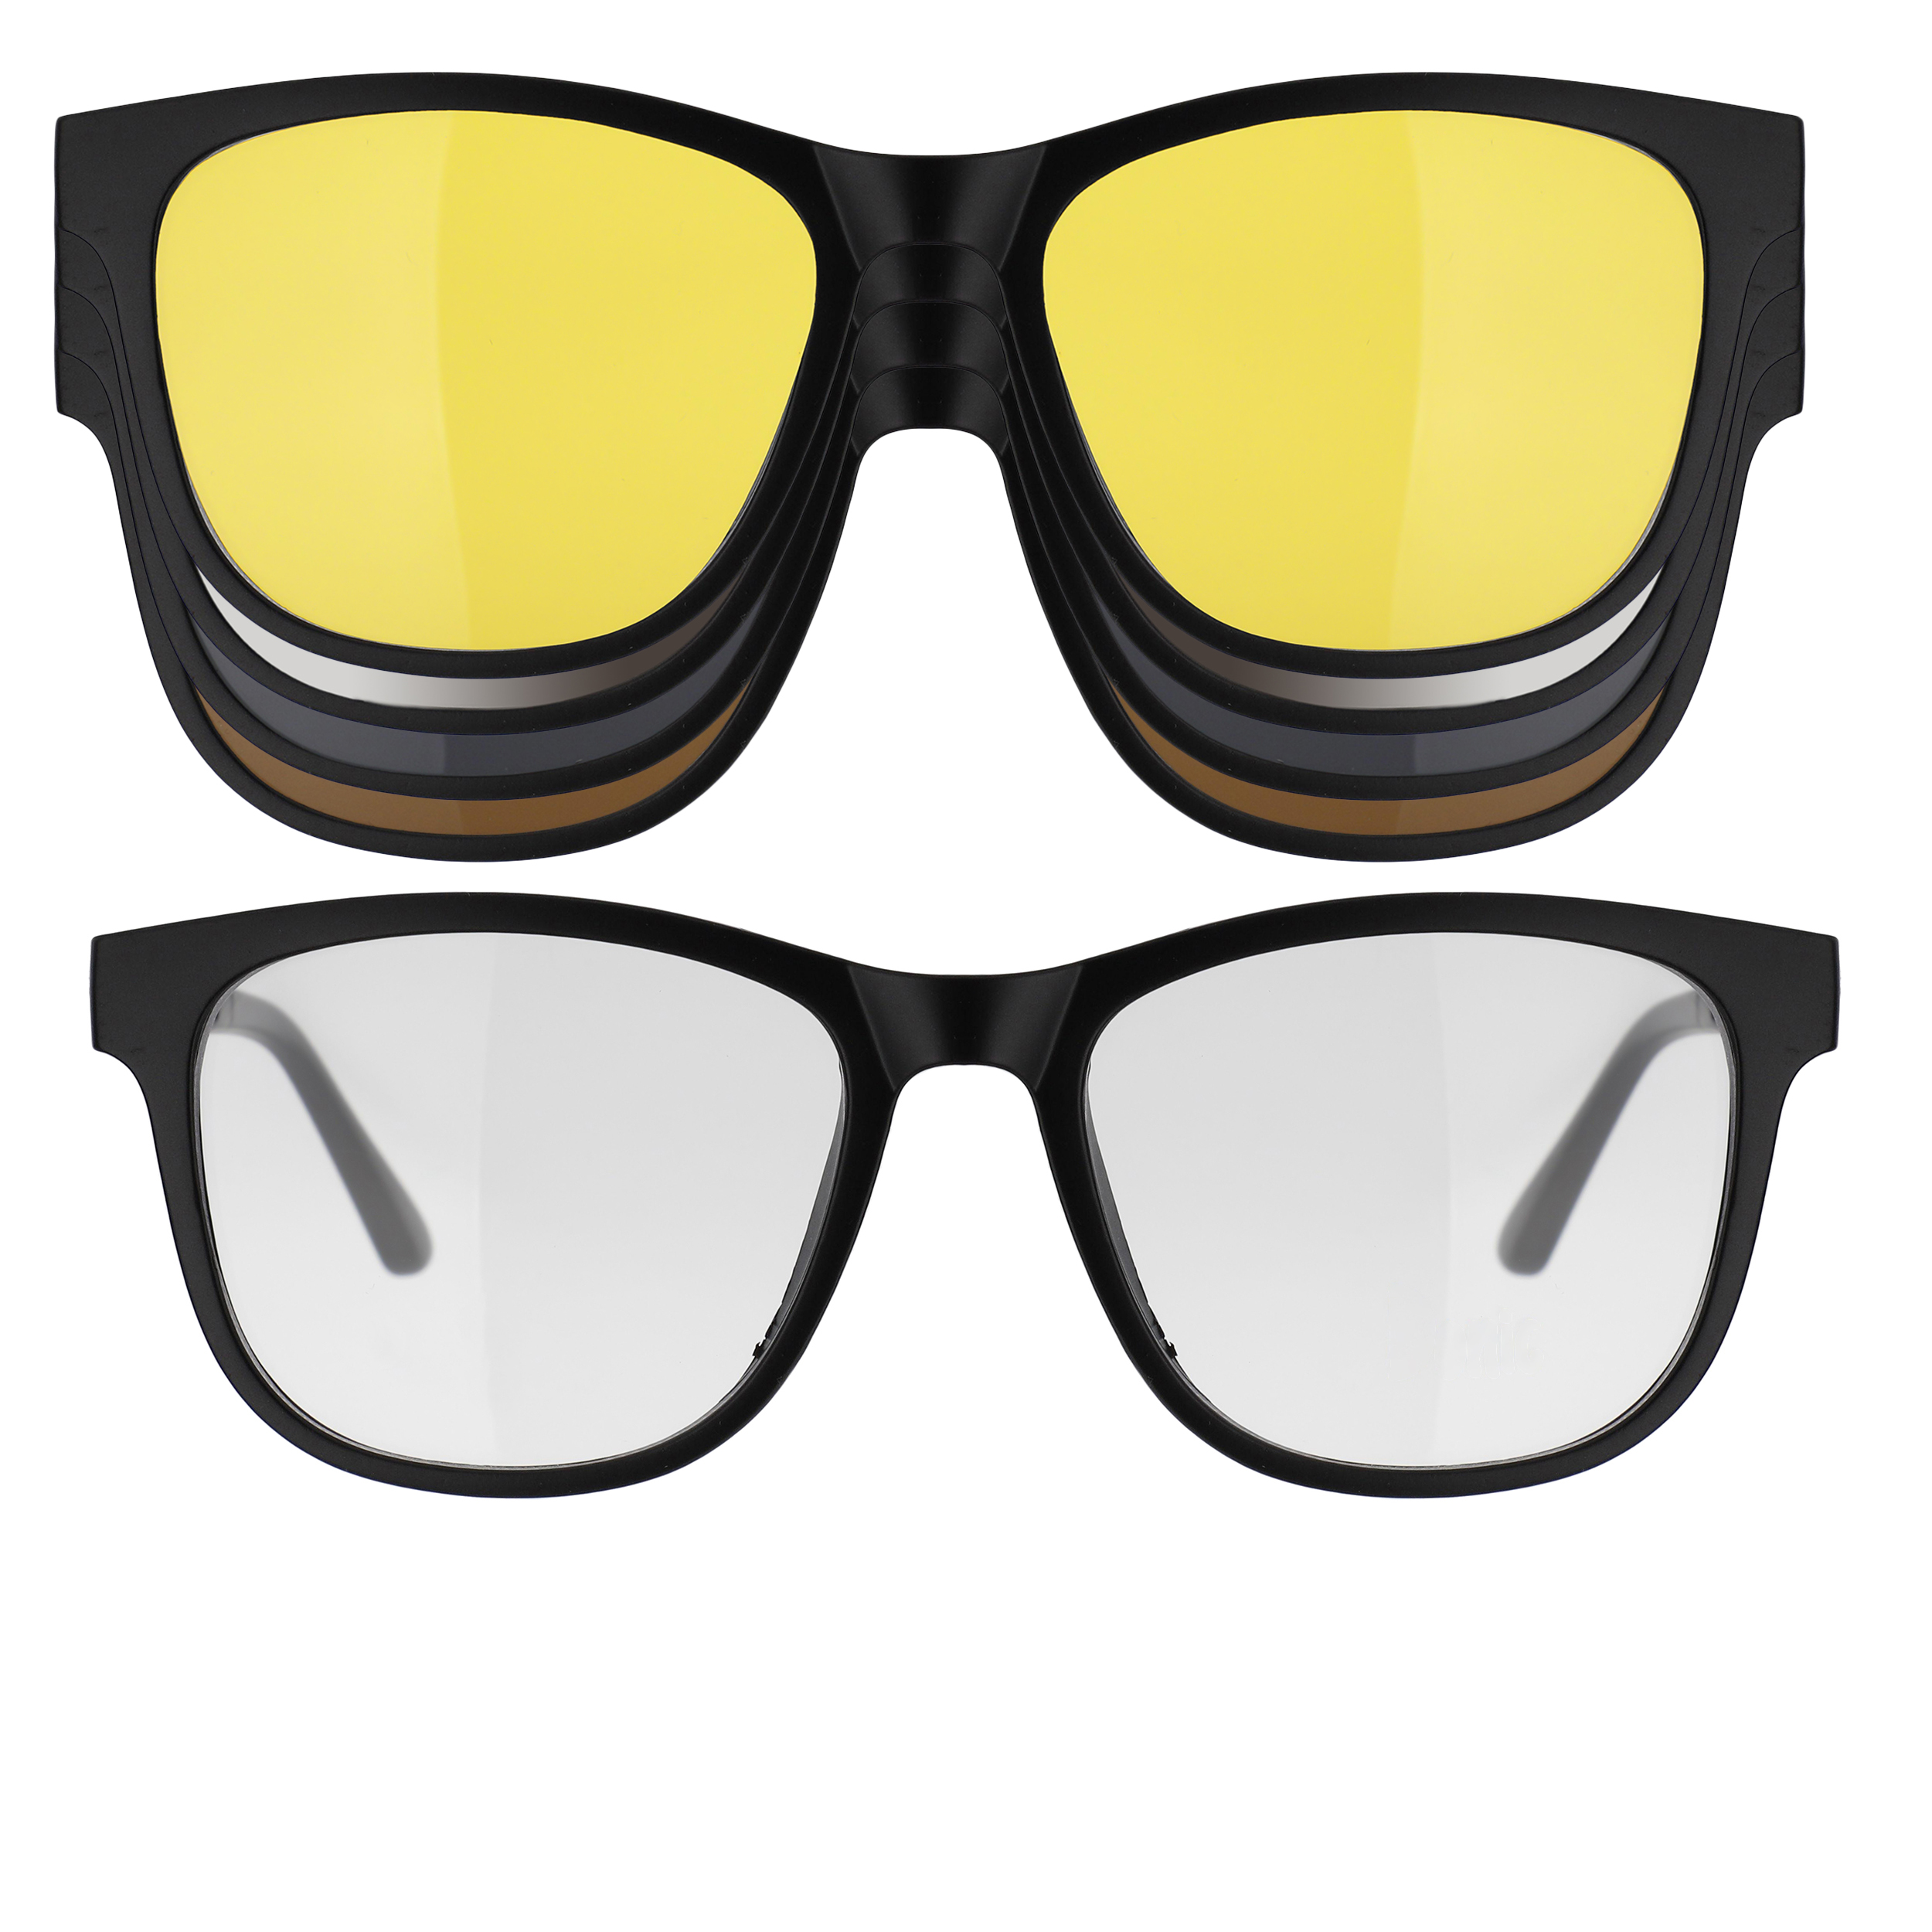 فریم عینک طبی دونیک مدل tr2230-c2 به همراه کاور آفتابی مجموعه 5 عددی